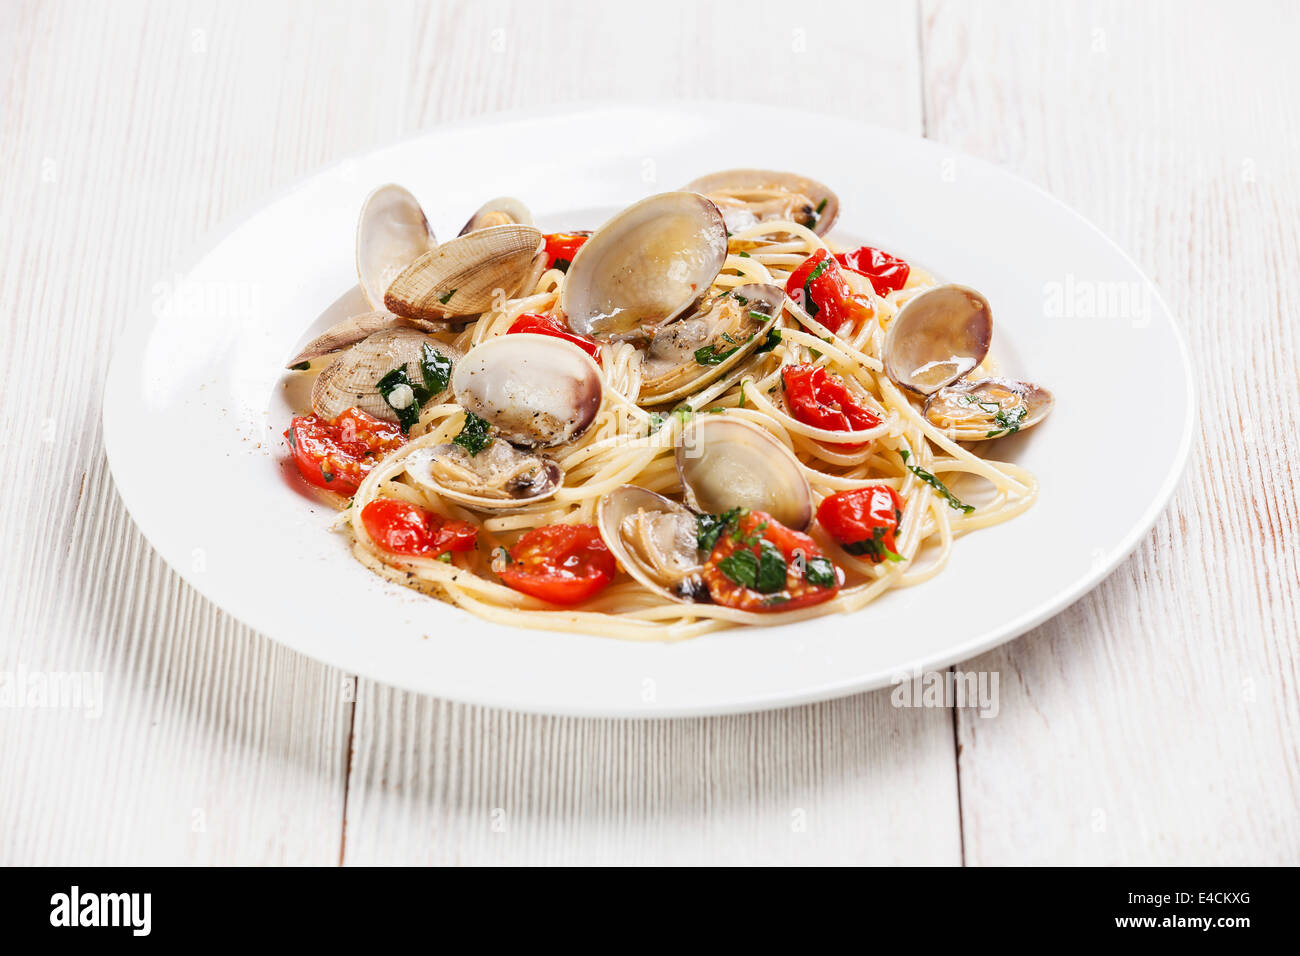 Pâtes aux fruits de mer avec les palourdes en sauce tomate spaghettis alle vongole on white background Banque D'Images